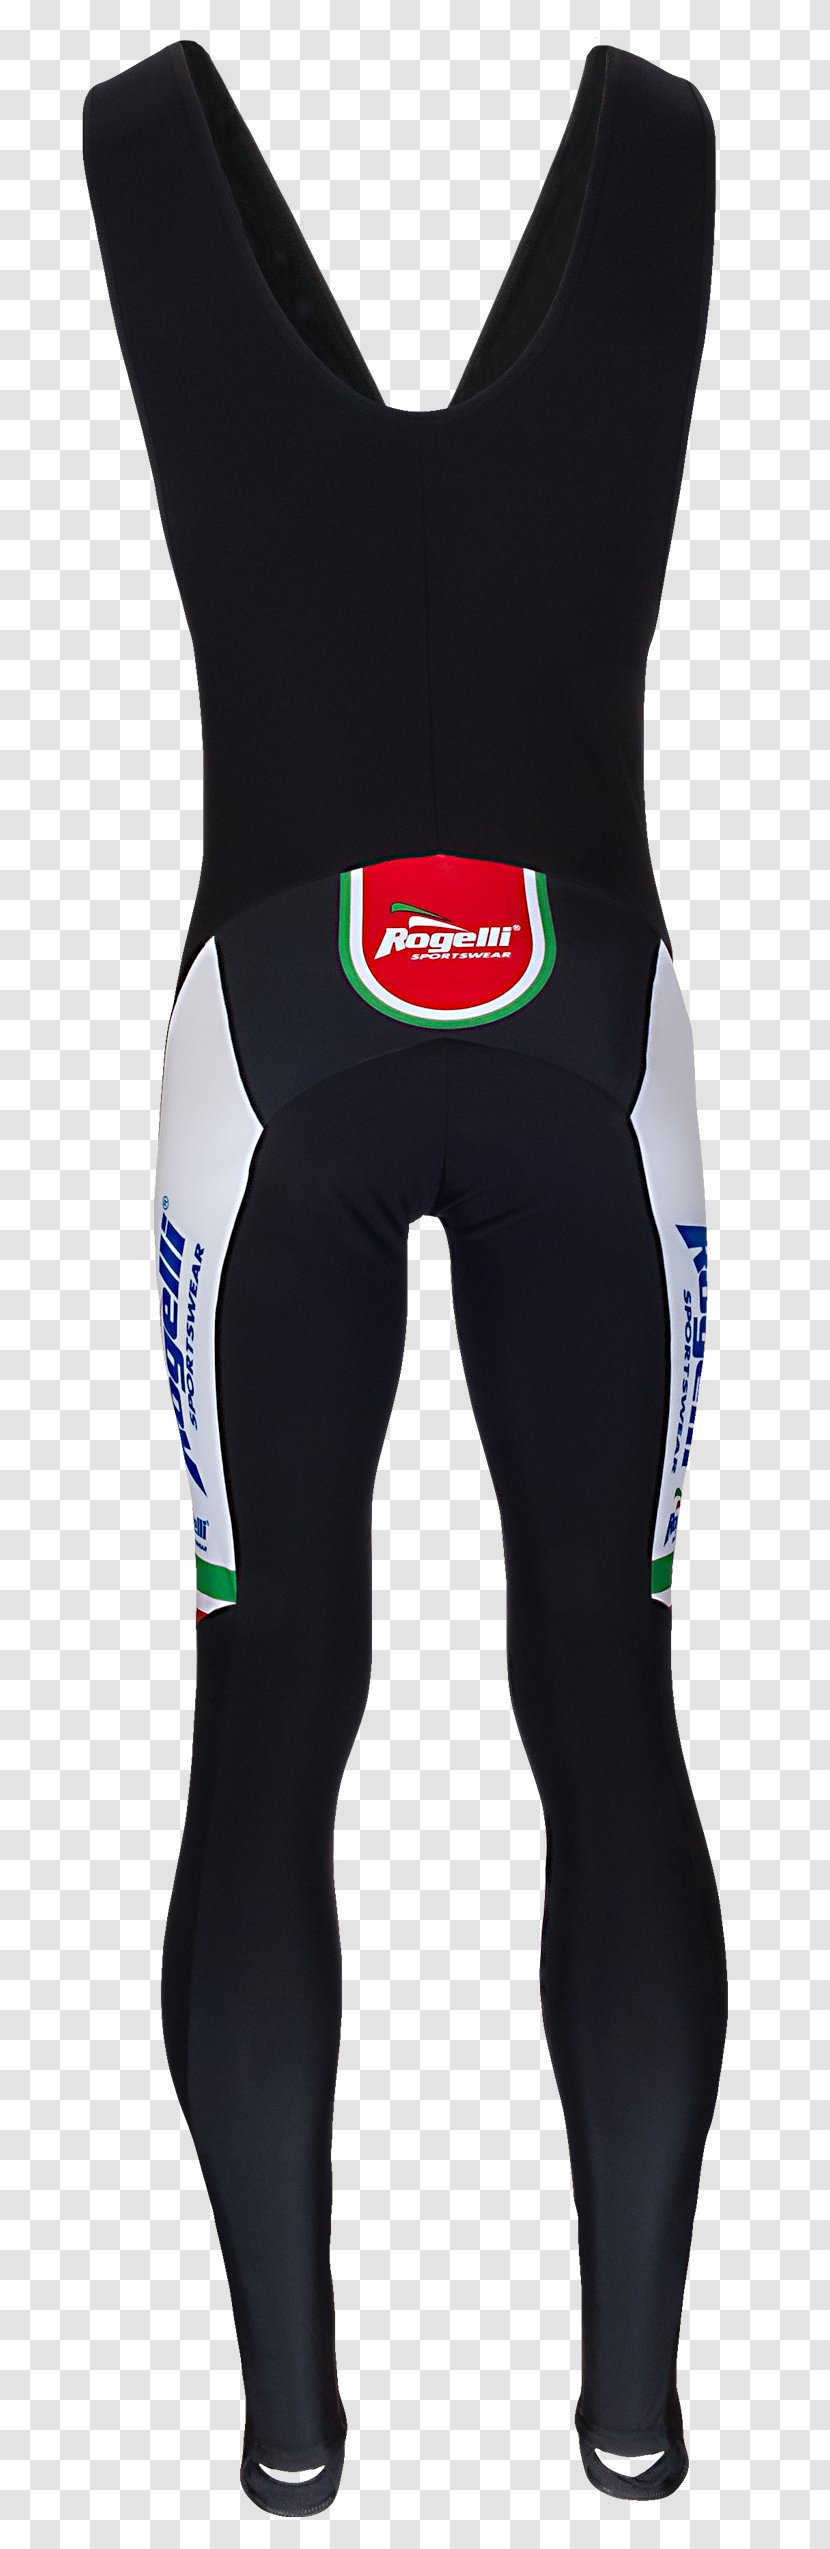 Wetsuit Uniform Tights - Sport - Design Transparent PNG